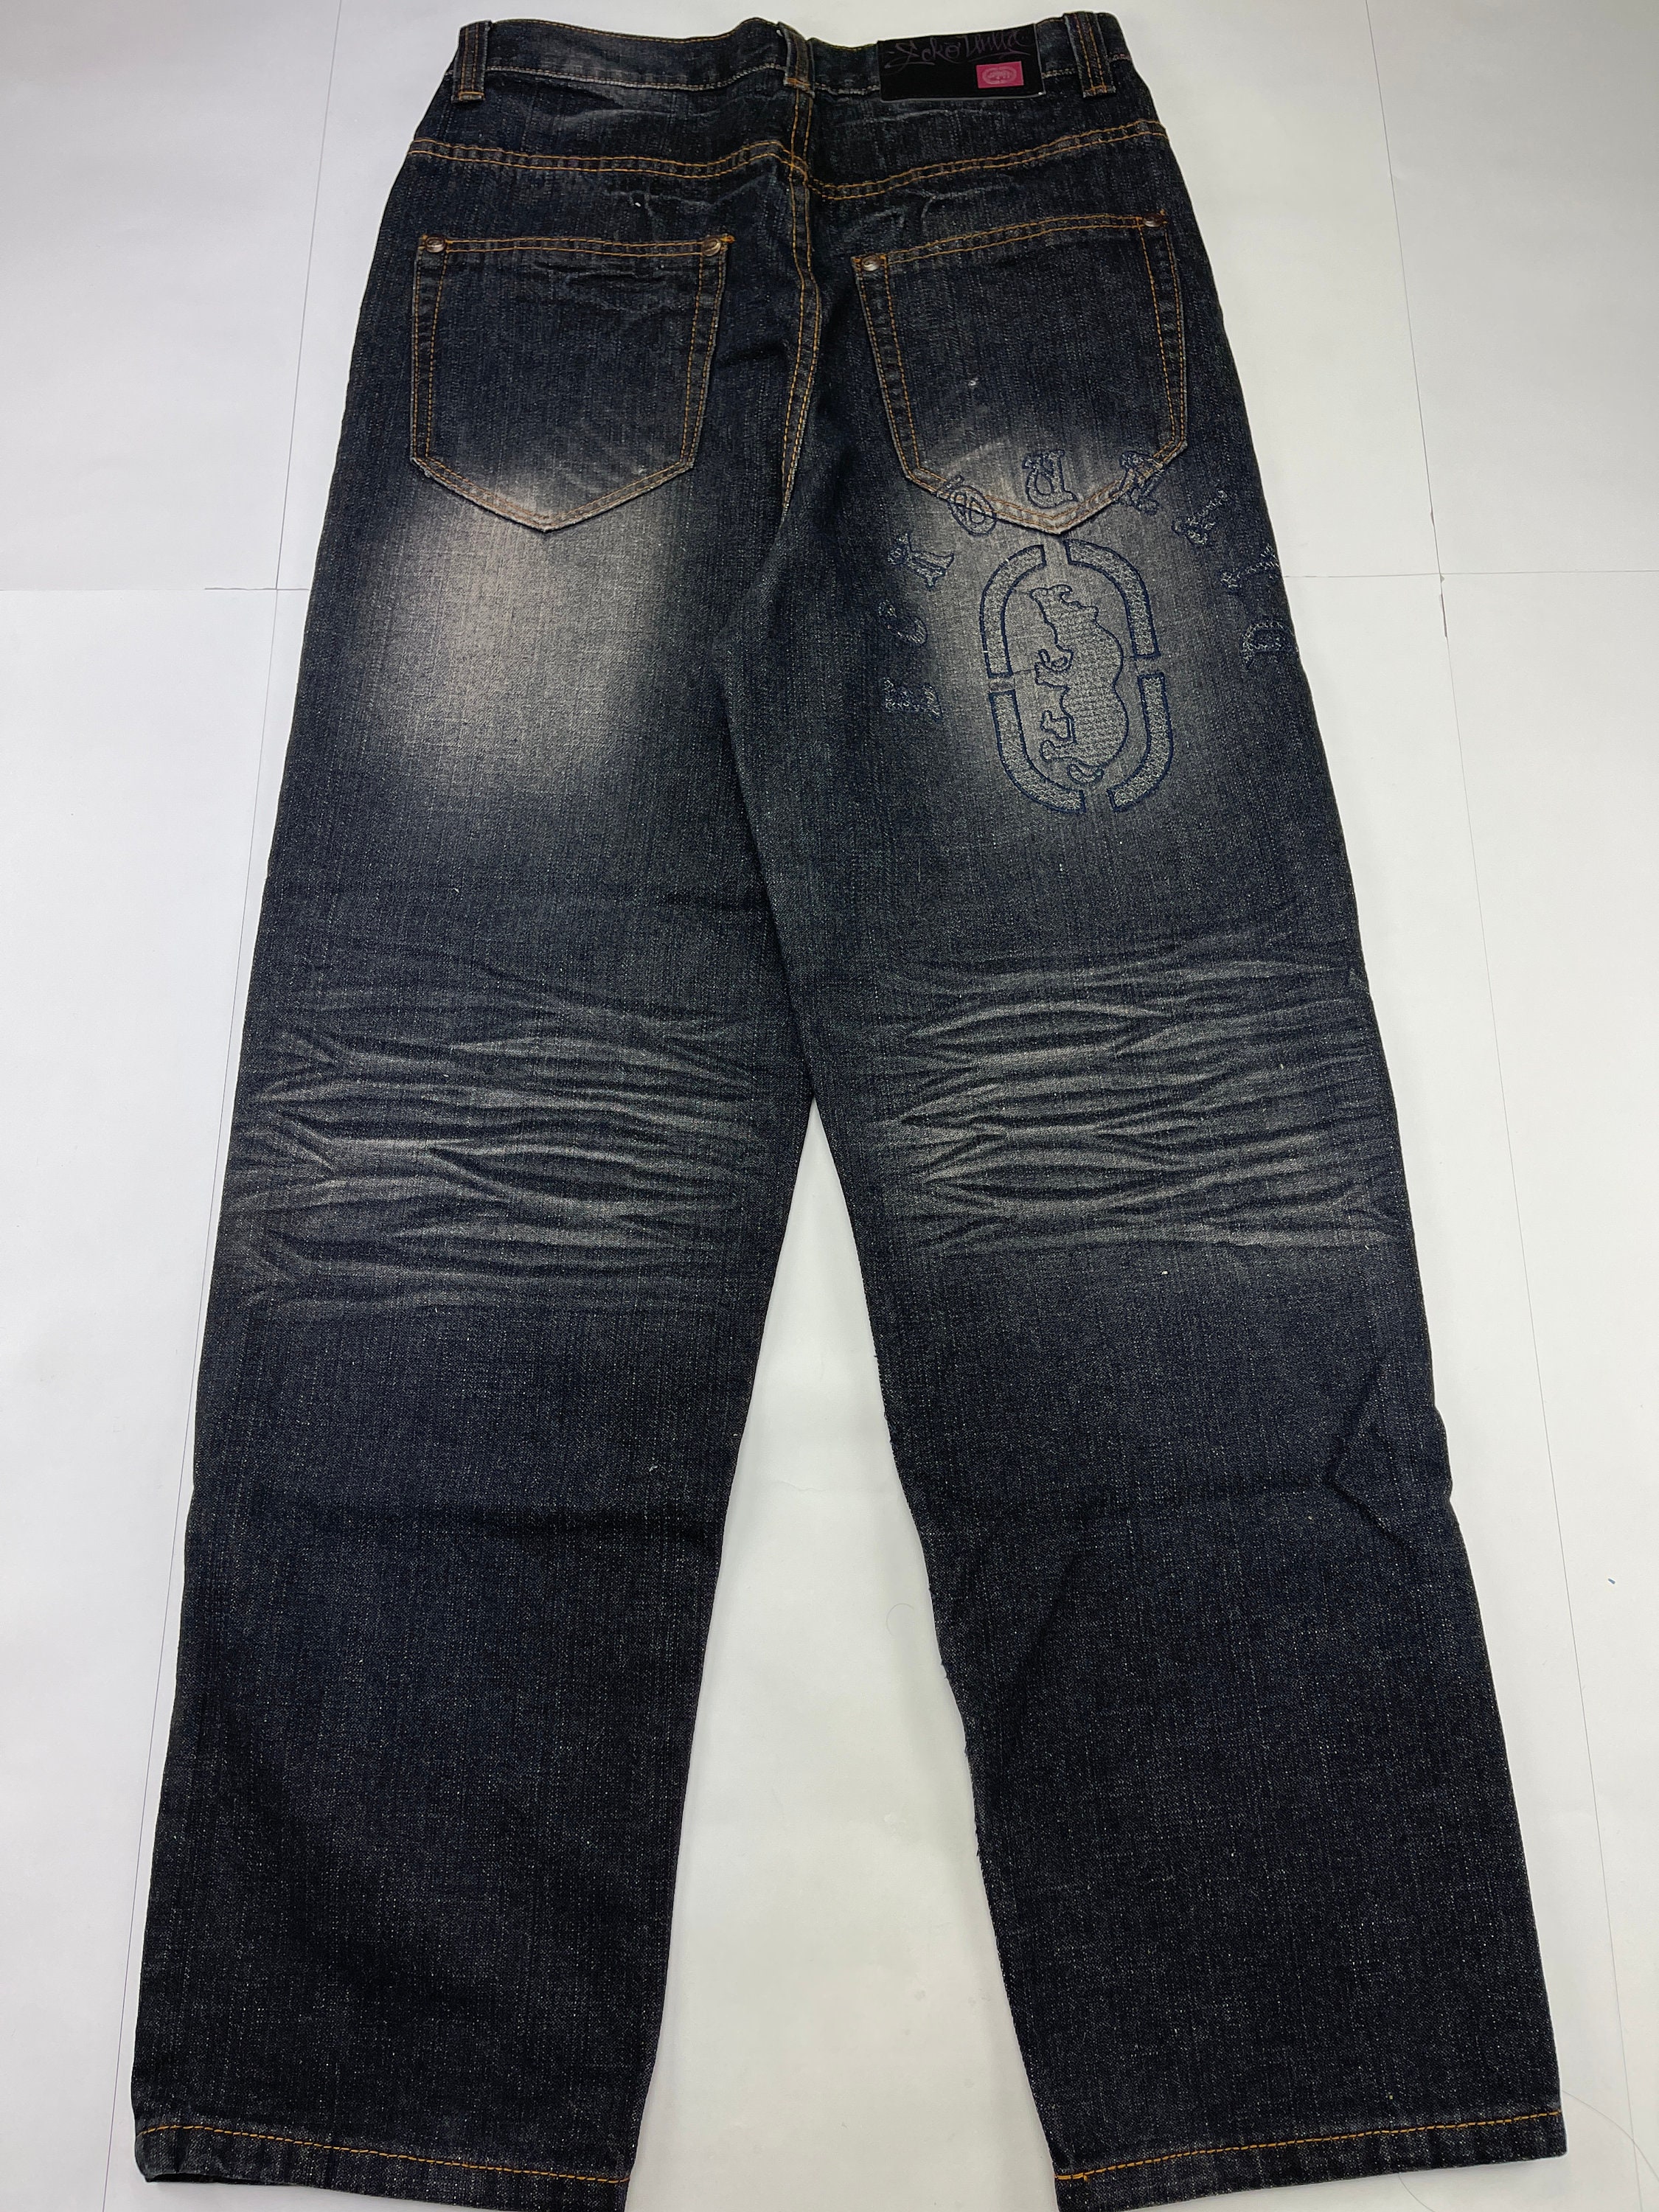 Ecko Unltd jeans black vintage baggy pants 90s hip hop | Etsy